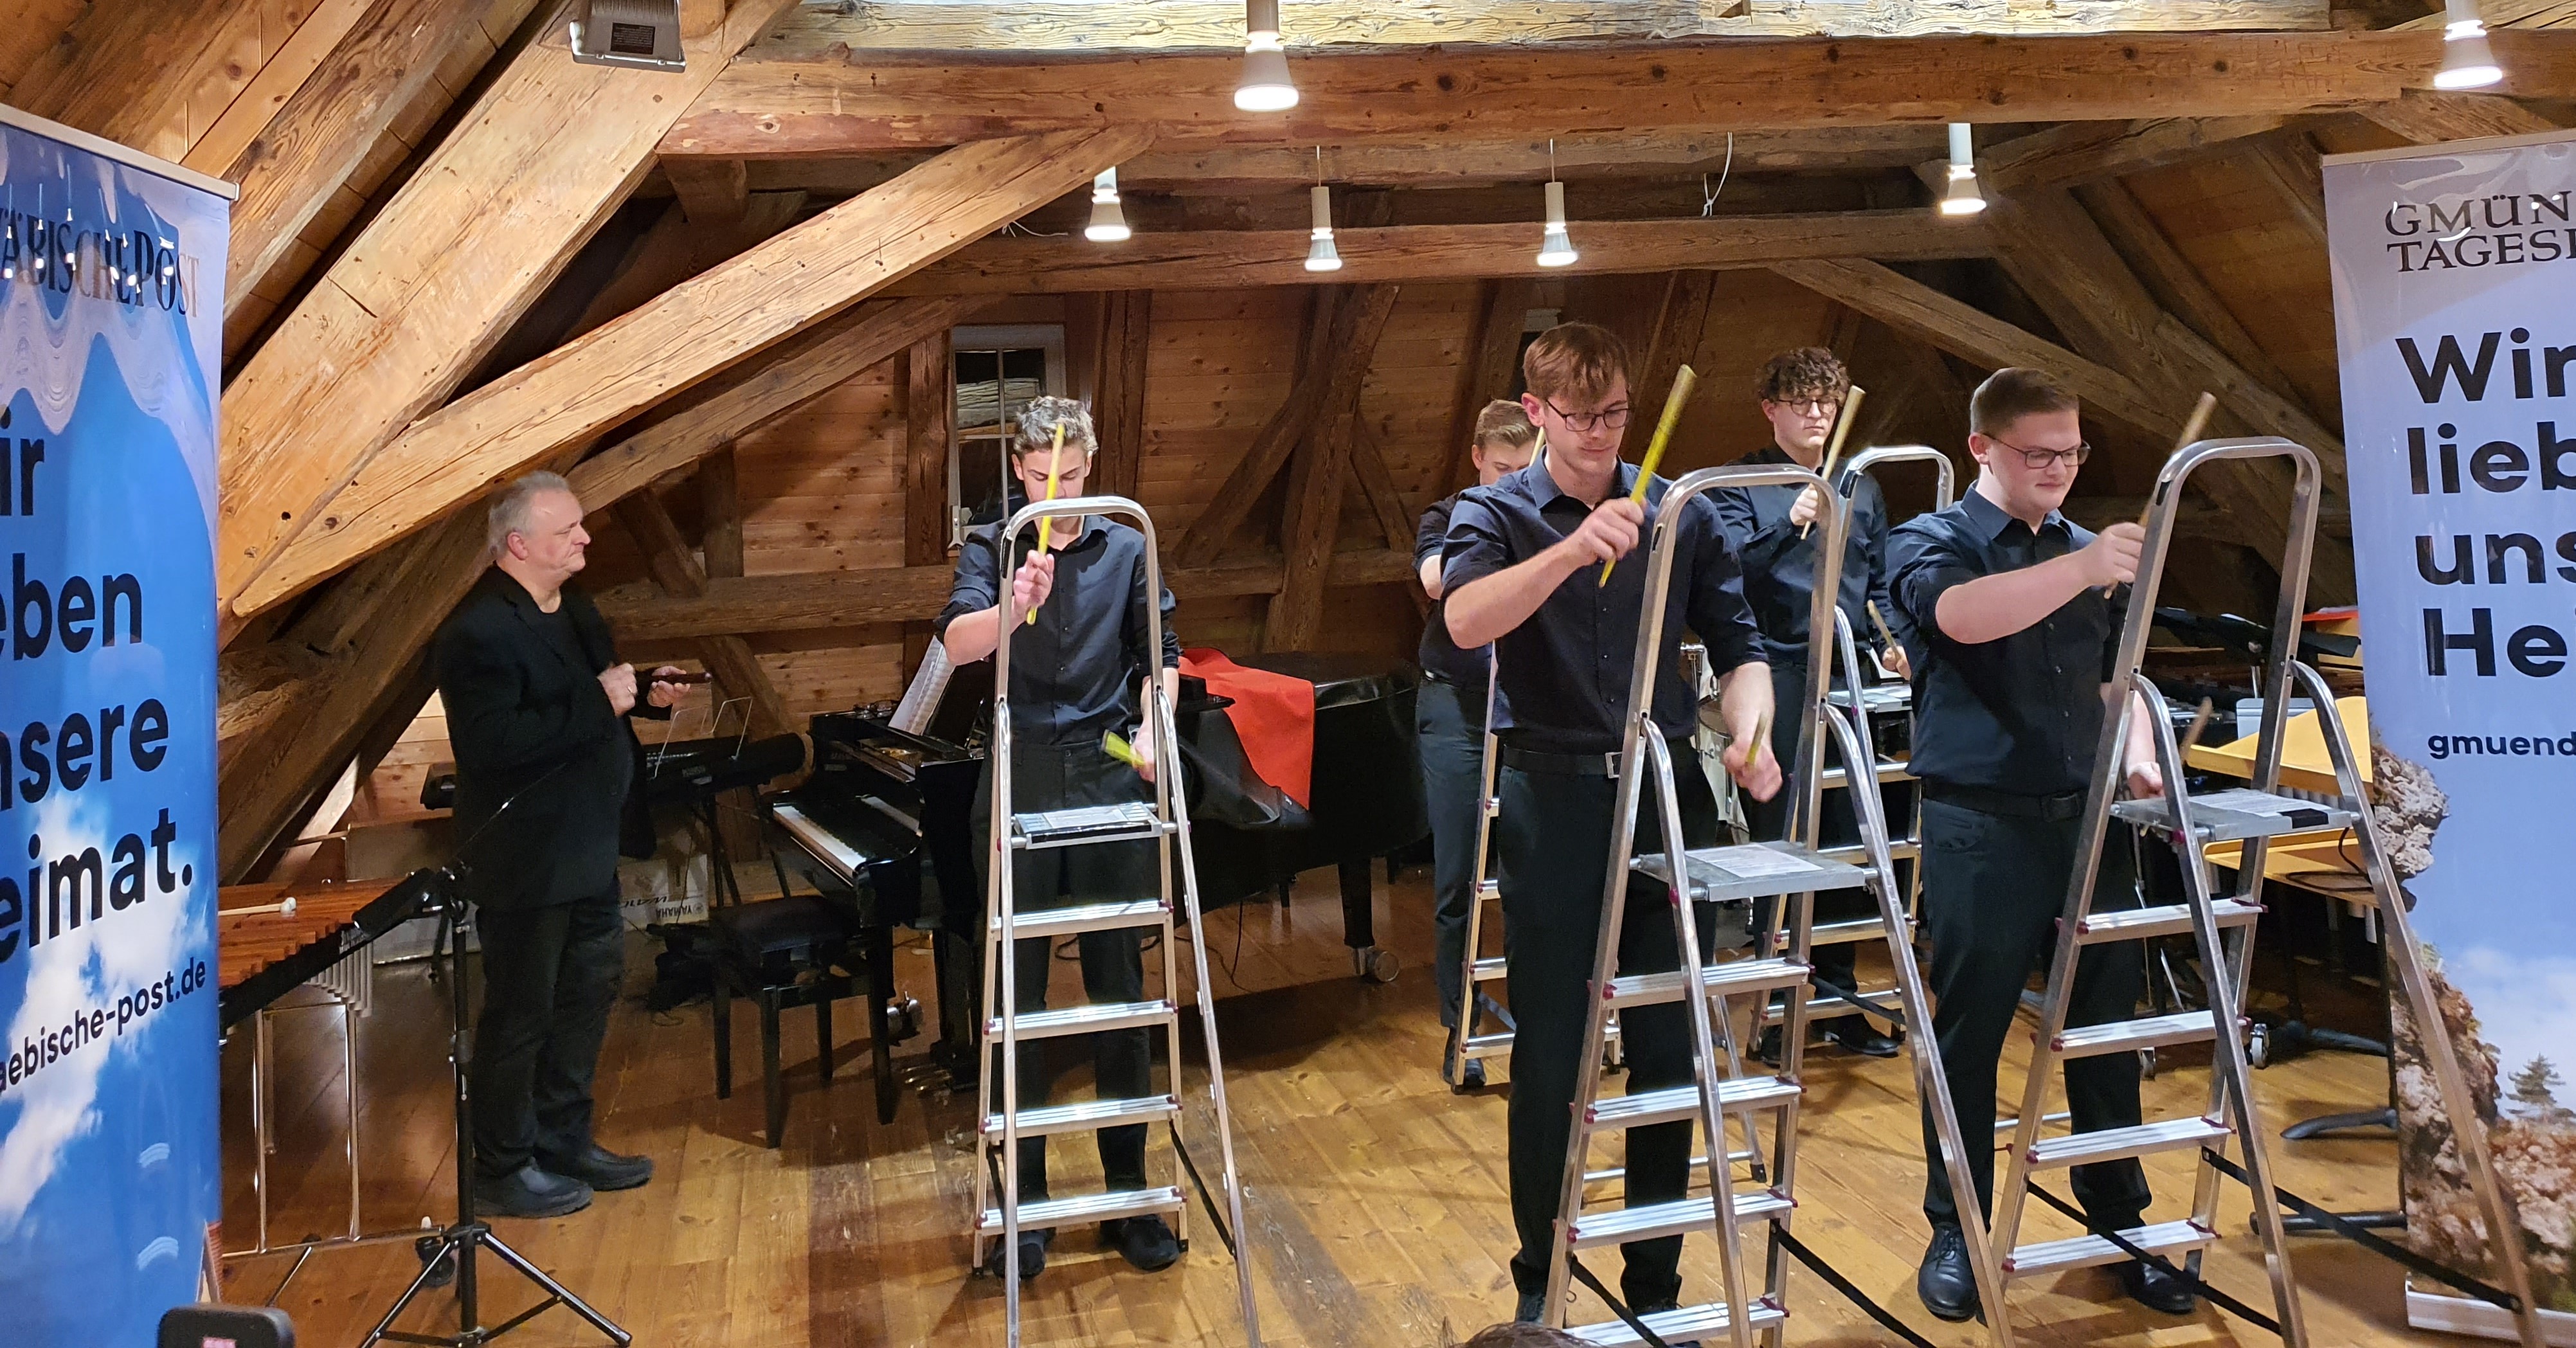  Das Percussionensemble der Musikschule unter der Leitung von Manfred Fischer umrahmte mit pfiffigen und originellen Beiträgen die gelungene Feierstunde im Waldstetter Bürgerhaus. 